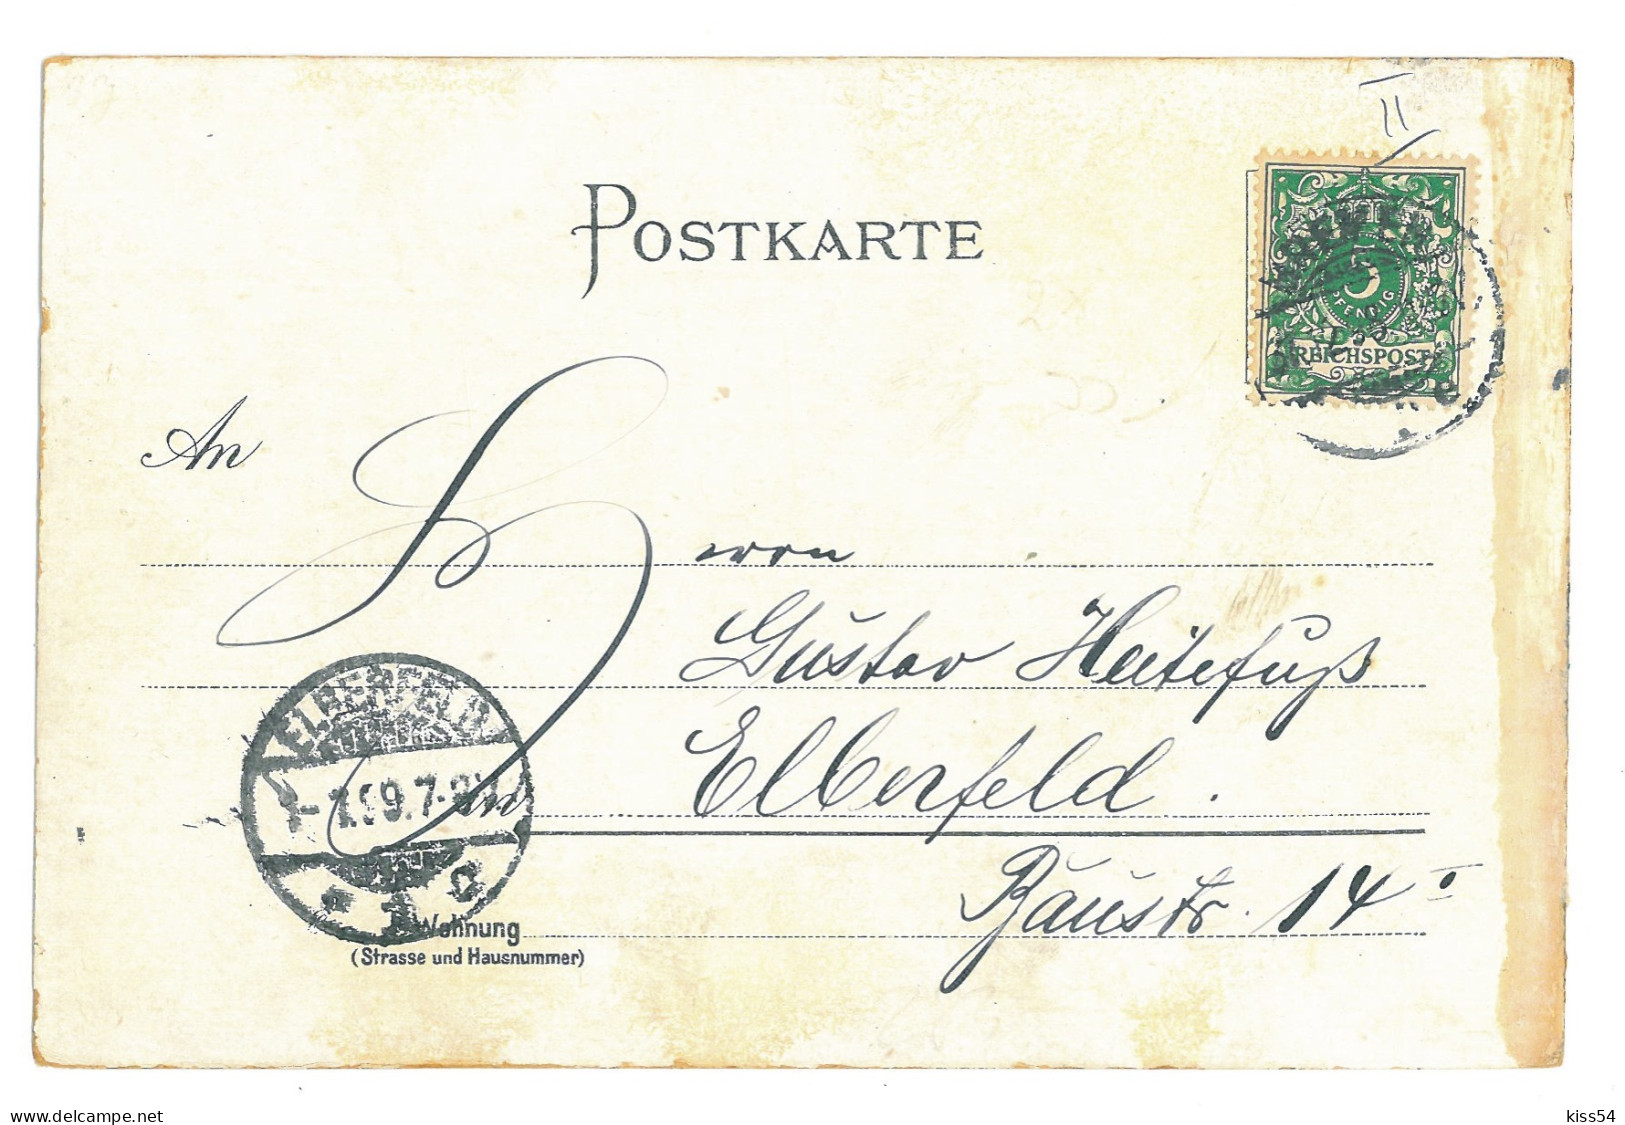 GER 52 - 16878 BREMEN, Litho, Germany - Old Postcard - Used - 1899 - Bremen